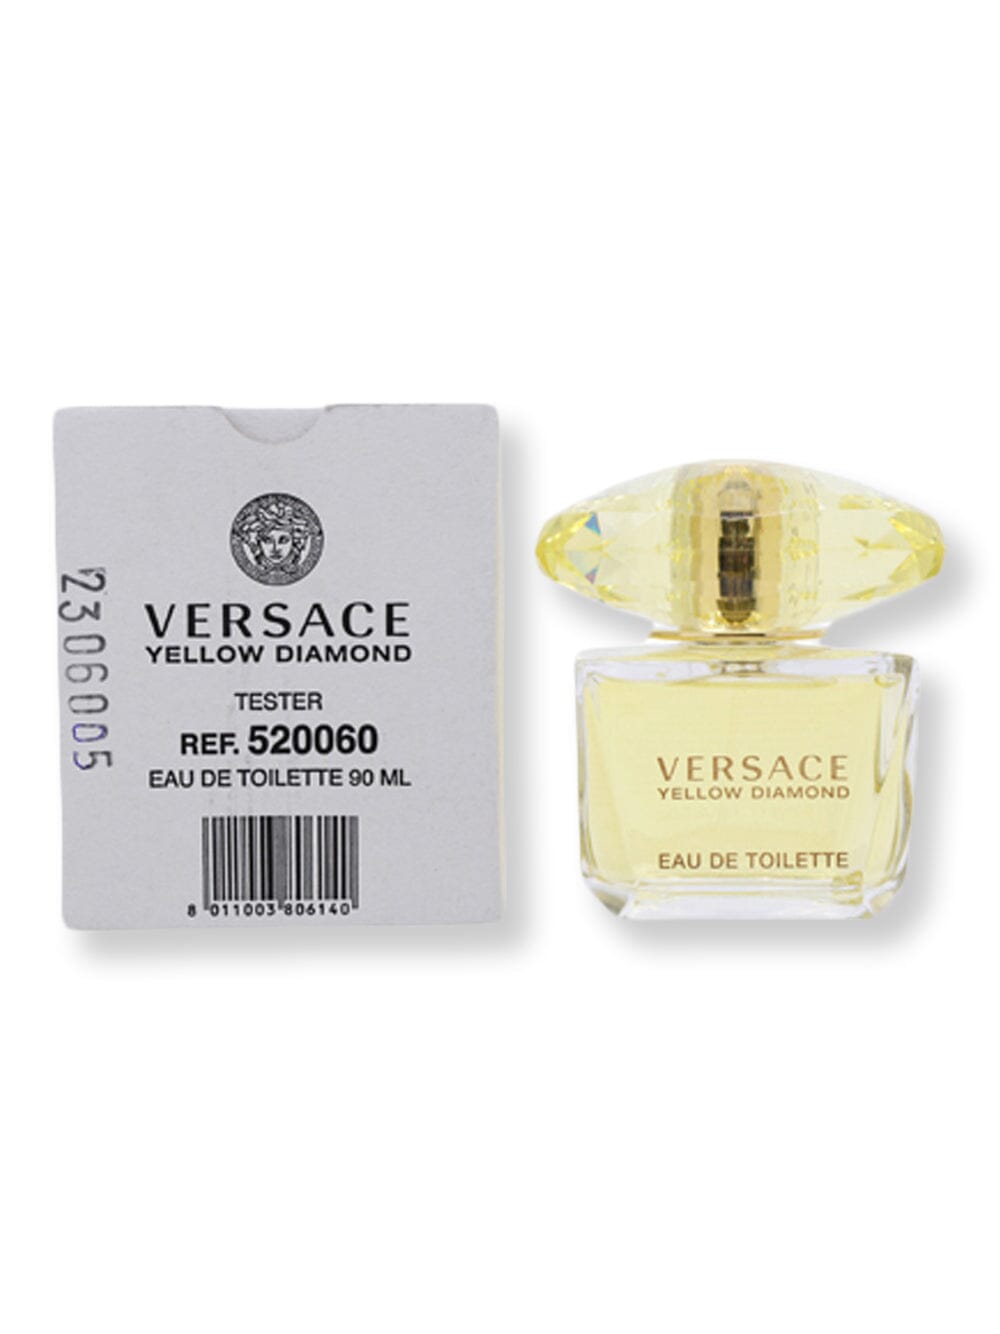 Versace Versace Yellow Diamond EDT Spray Tester 3 oz90 ml Perfume 